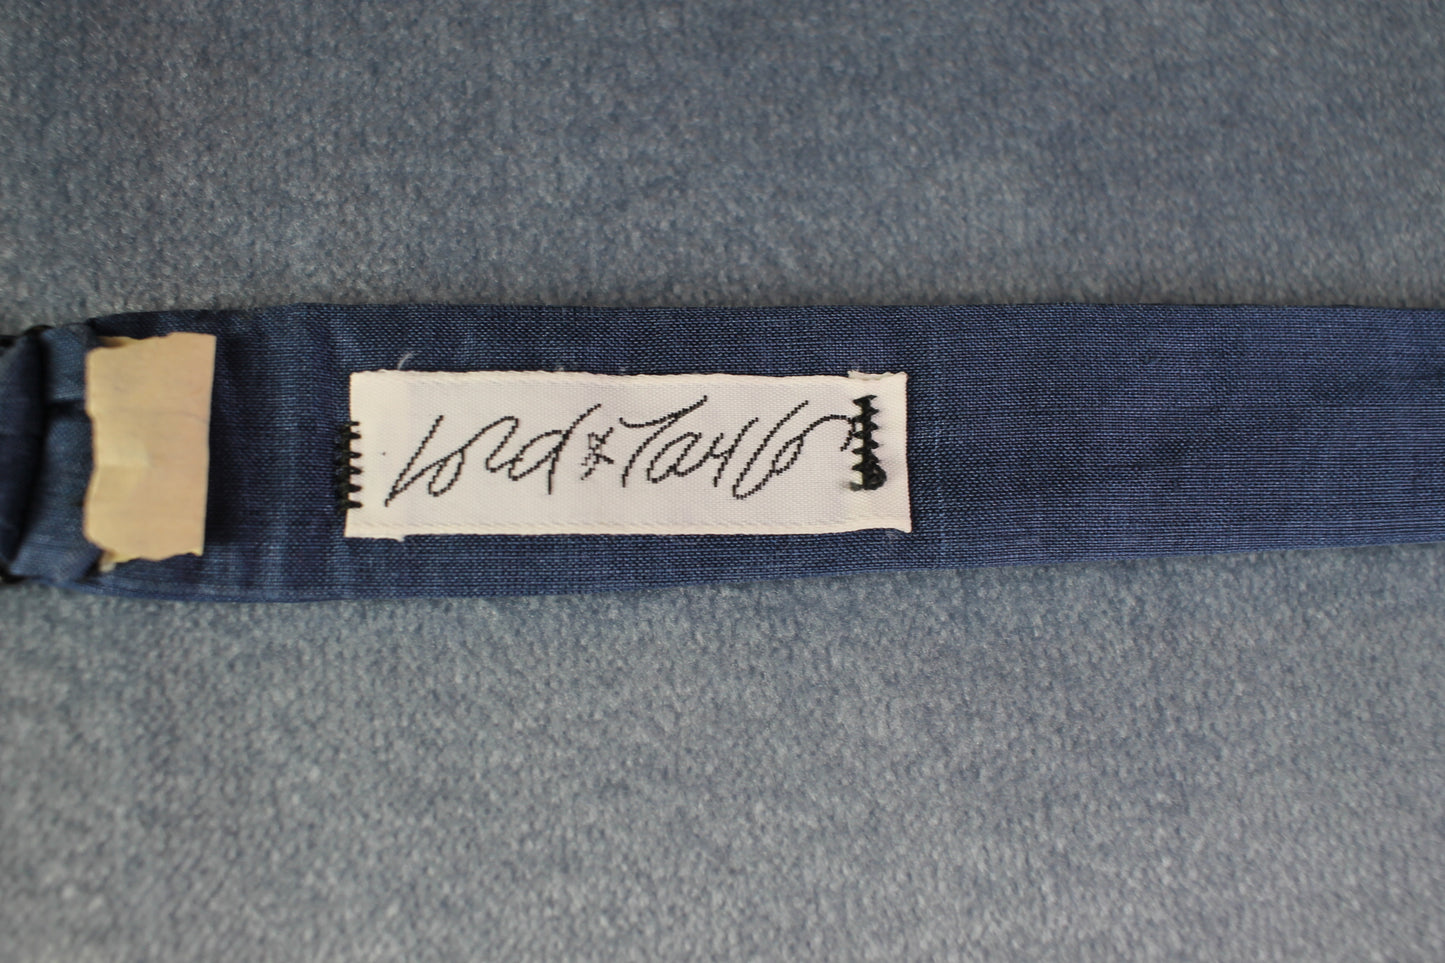 Vintage Fold & Taylor self tie thistle end denim blue colour bow tie adjustable